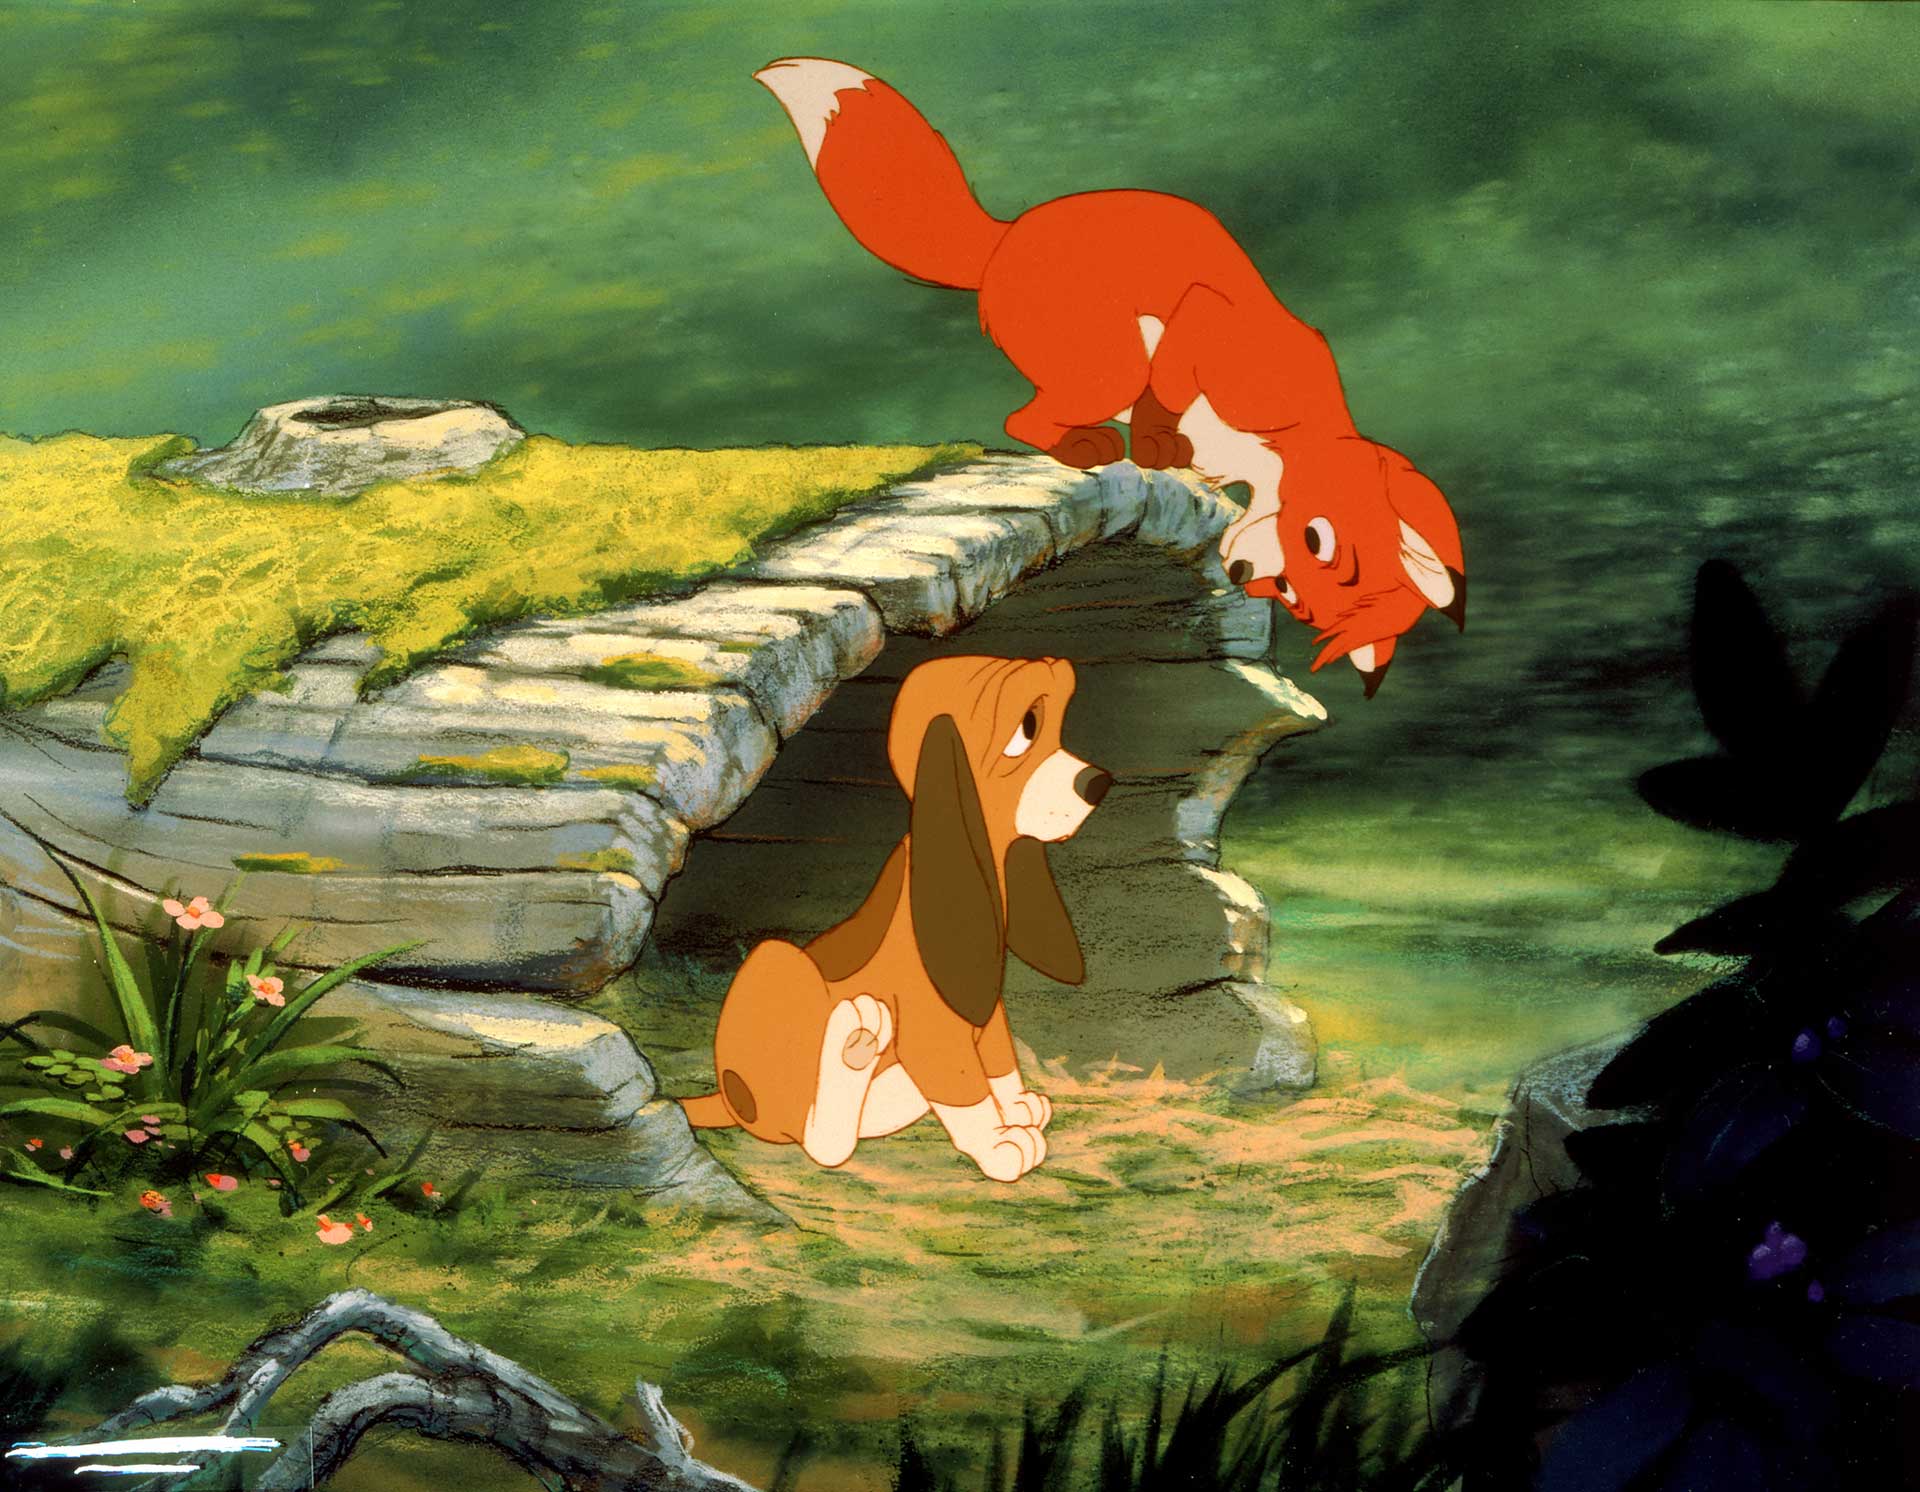 روباه و سگ شکاری در انیمیشن The Fox and the Hound دیزنی